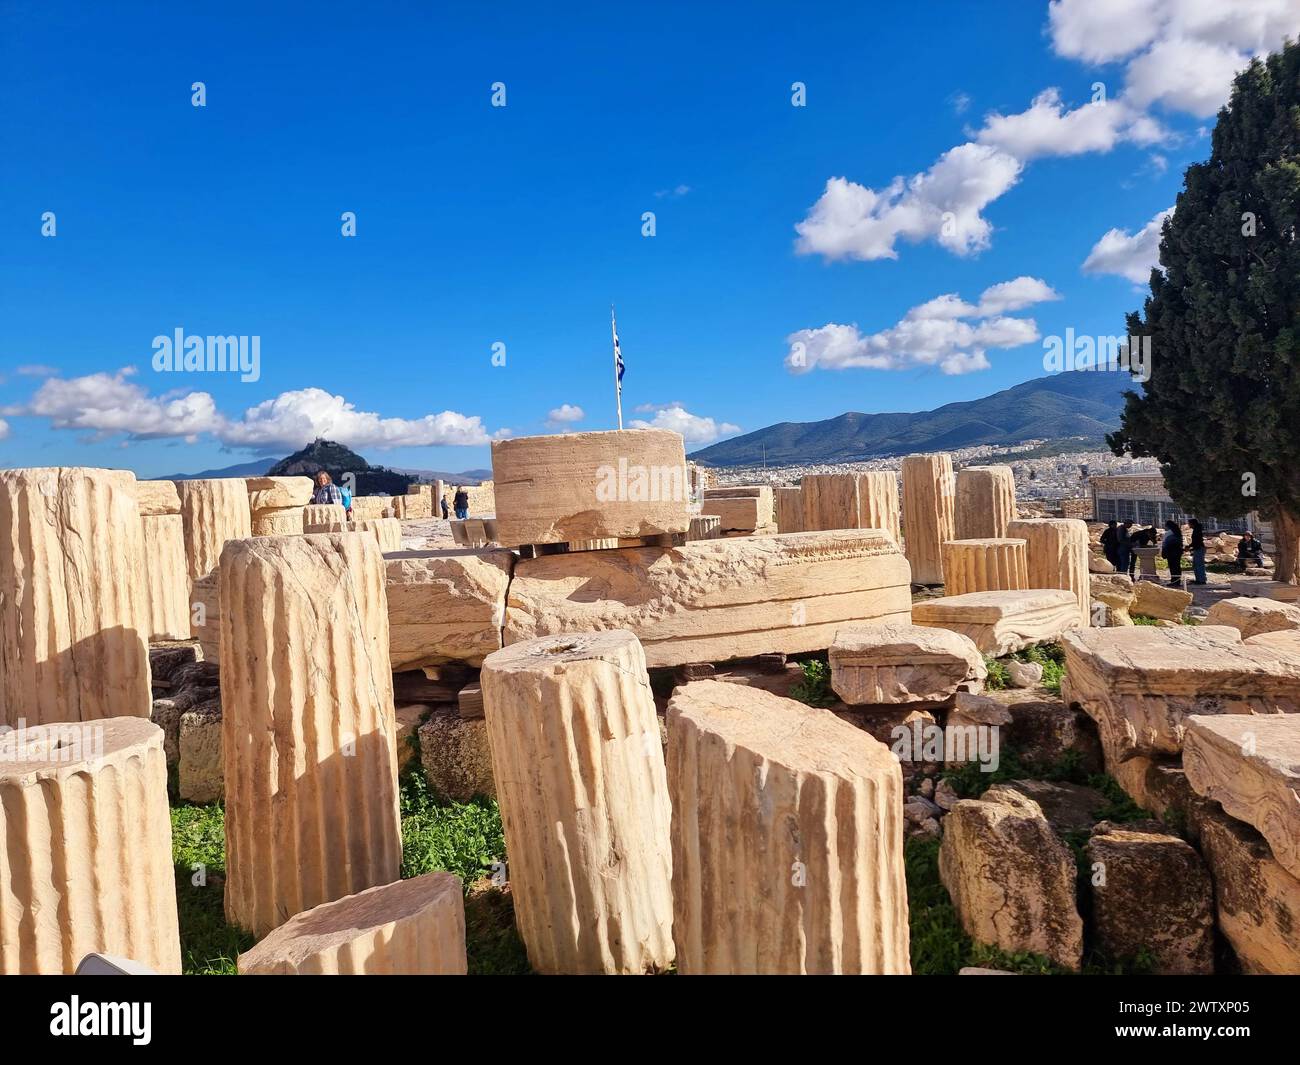 Ruinen rund um Parthenon. Der Parthenon. Der Parthenon wurde Mitte des 5. Jahrhunderts v. Chr. fertiggestellt und ist das Herzstück der Akropolis und wird oft als Meisterwerk der dorischen Architektur angesehen. Der Name bezieht sich auf Athena Parthenos oder „Athena die Jungfrau“. Griechenland. Stockfoto